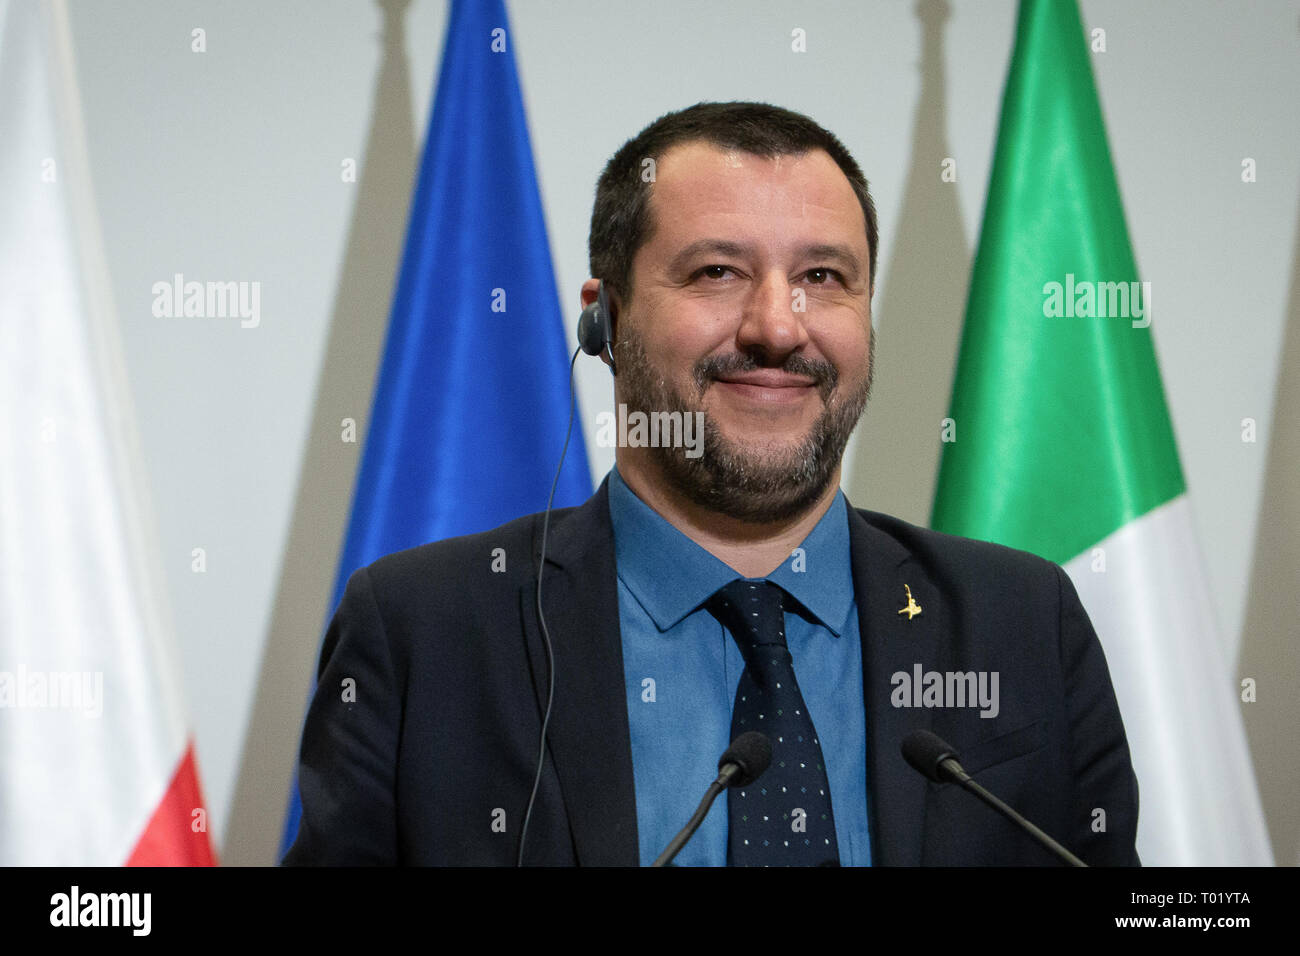 Der stellvertretende Ministerpräsident von Italien Matteo Salvini während der Pressekonferenz mit polnischen Innenminister Joachim Brudzinski im Innenministerium in Warschau, Polen am 9. Januar 2019 Stockfoto